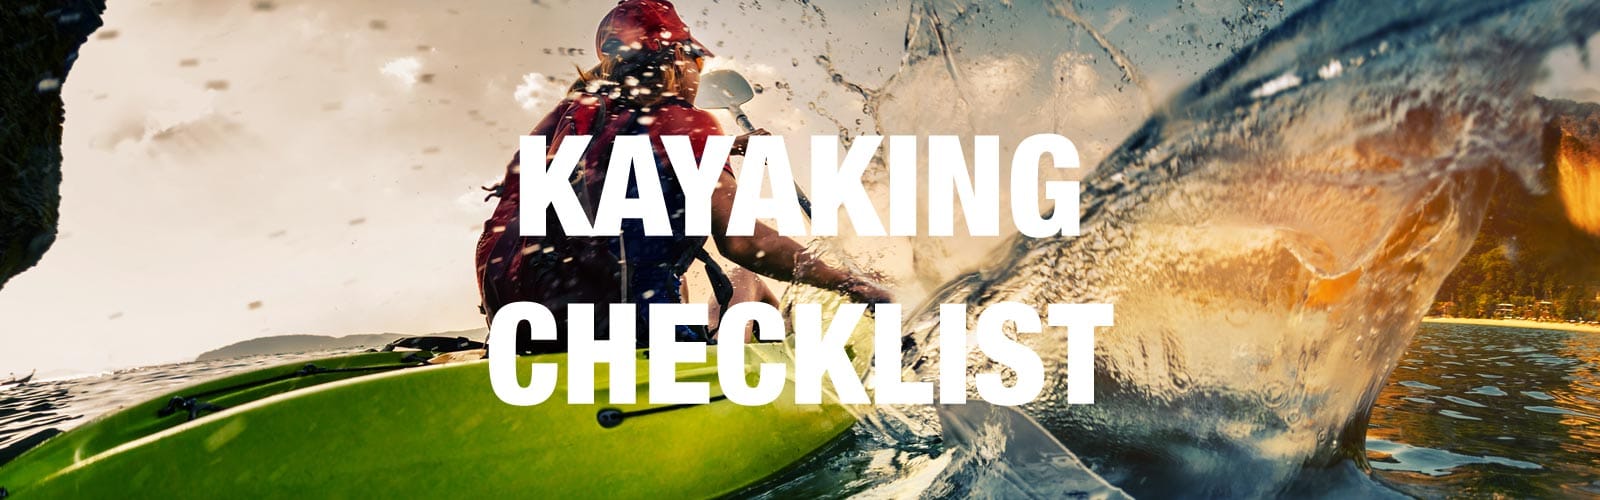 Kayaking Safety Checklist, Kayak safety